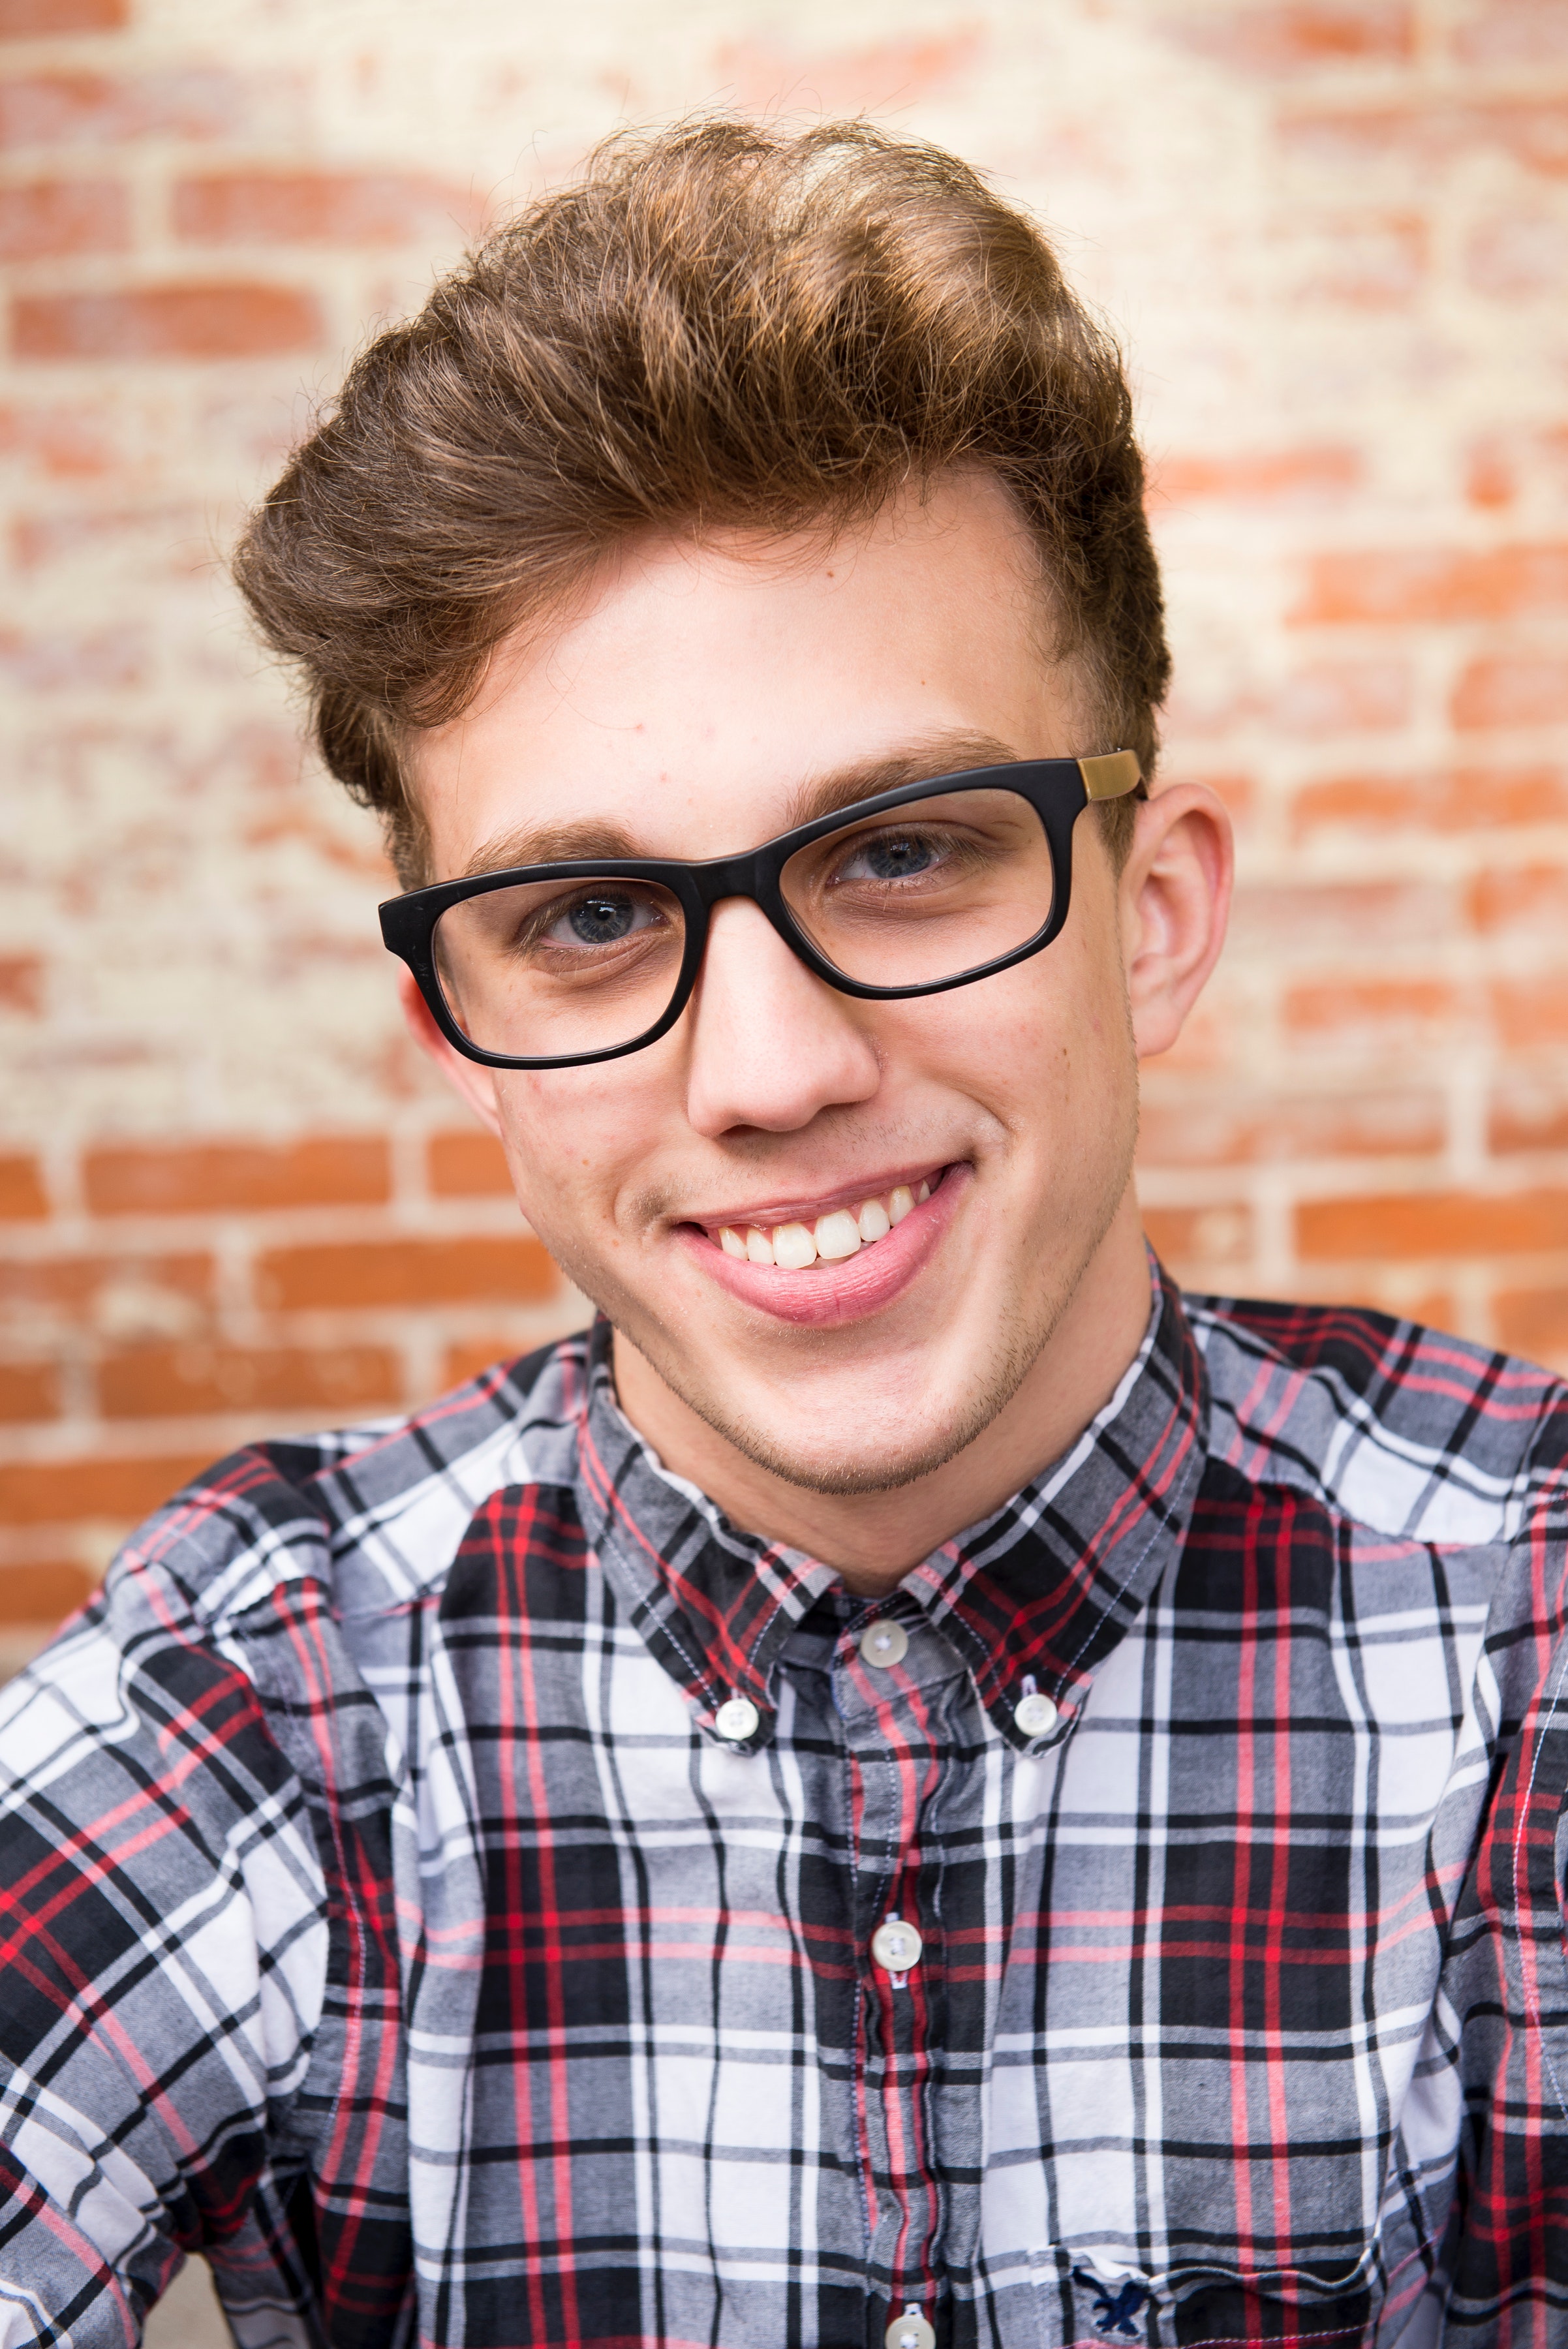 Man wearing eyeglasses and smiling photo